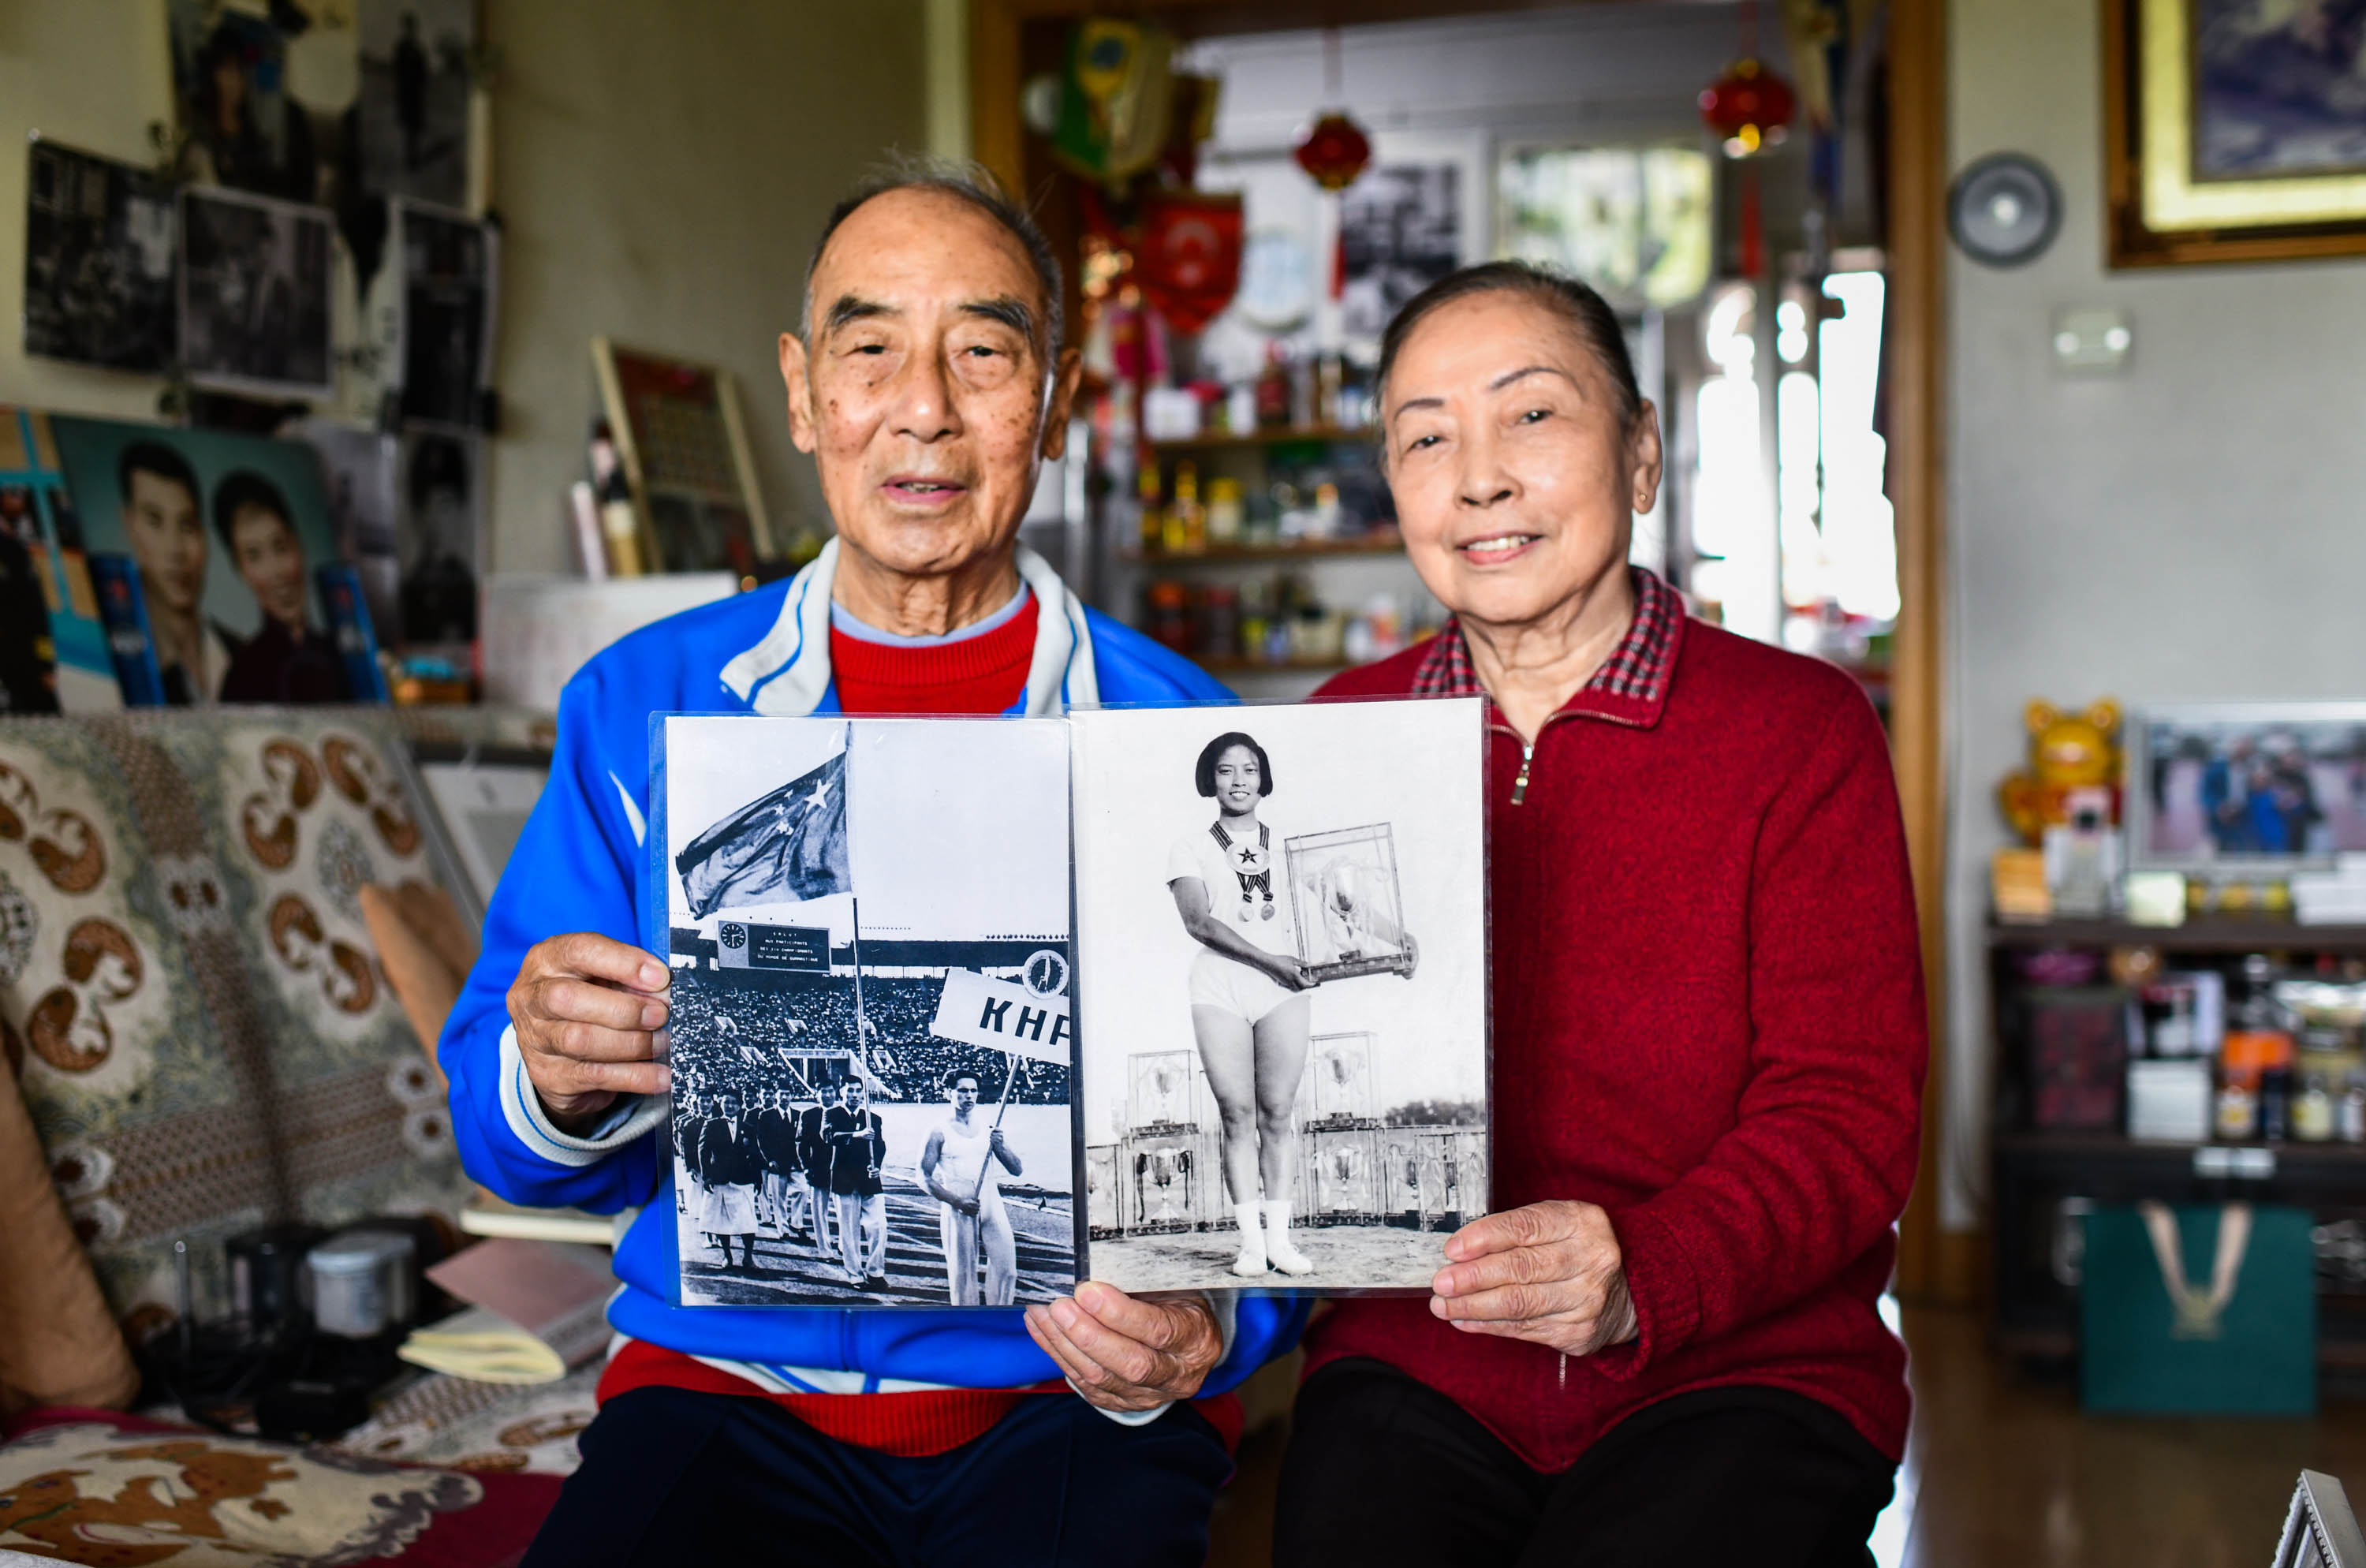 吴树德、兰亚兰夫妇展示参加国际比赛并获奖的照片。邓伟摄